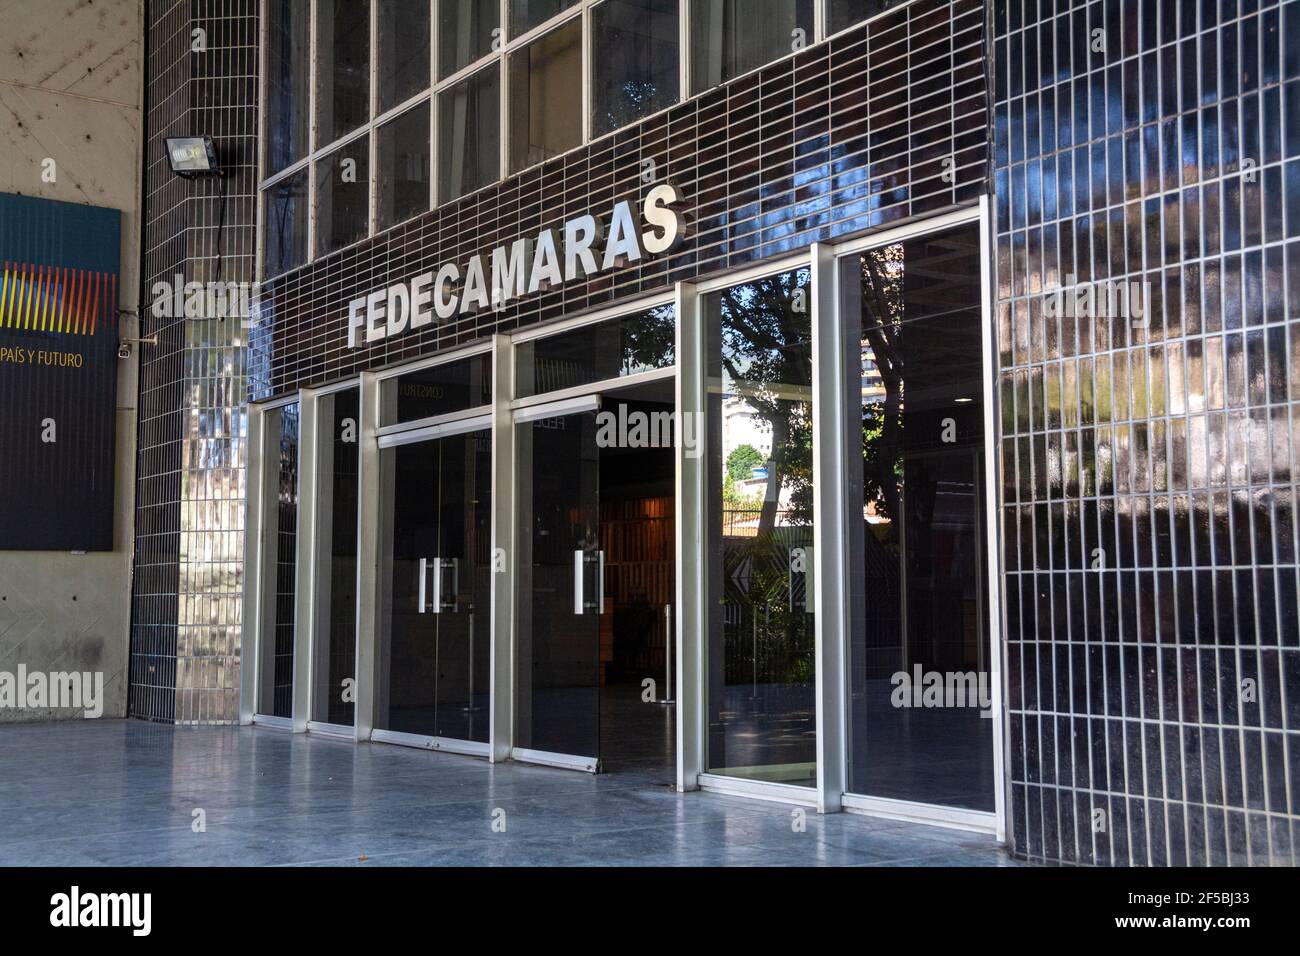 FEDECAMARAS est la principale organisation d'associations d'entreprises au Venezuela, composée d'hommes d'affaires de tous les secteurs économiques du pays. Le presi Banque D'Images